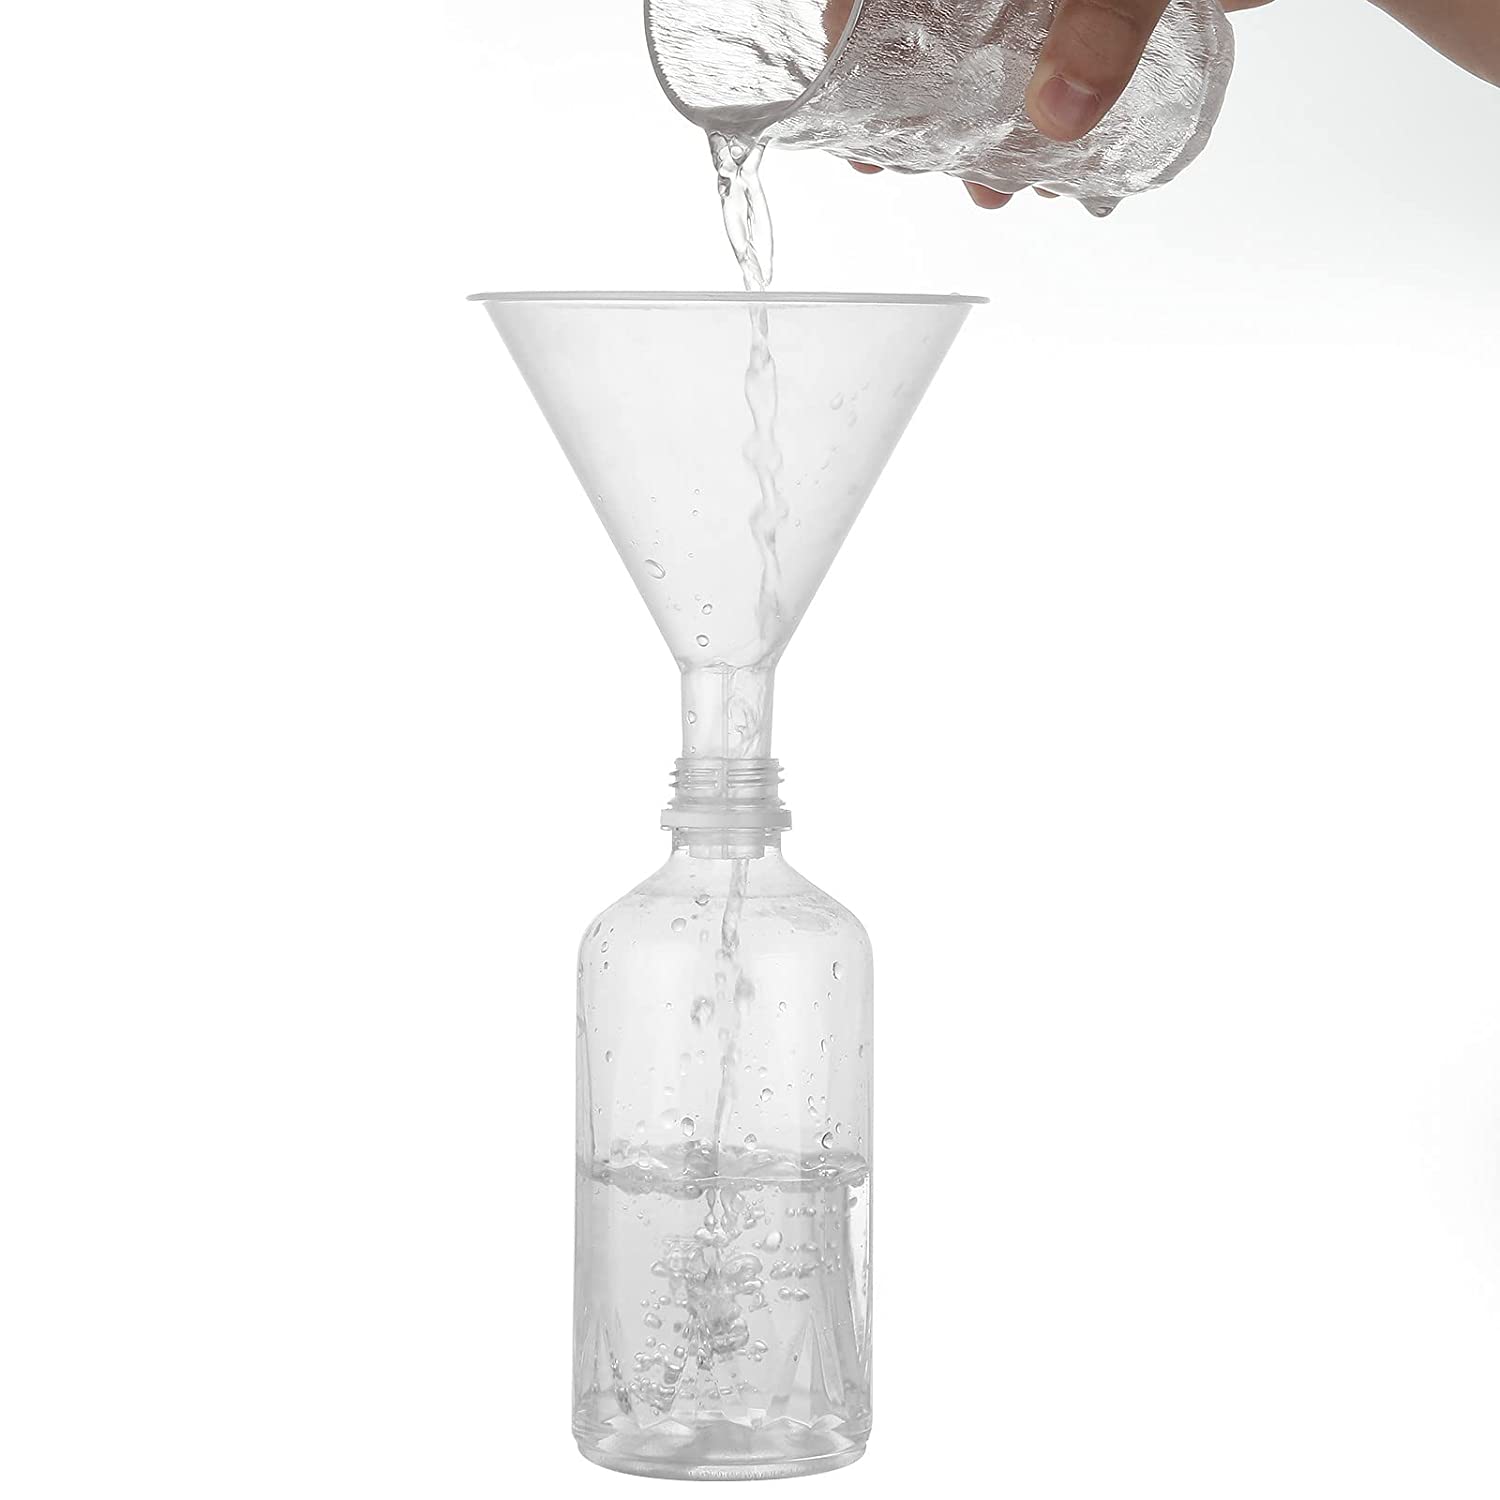 ALPENKOK Plastic Funnels for Filling Bottles - 20pcs 4.8in Kitchen Funnel for Water Bottle Funnel for Liquid Filling Bottle Clear Plastic Funnels for